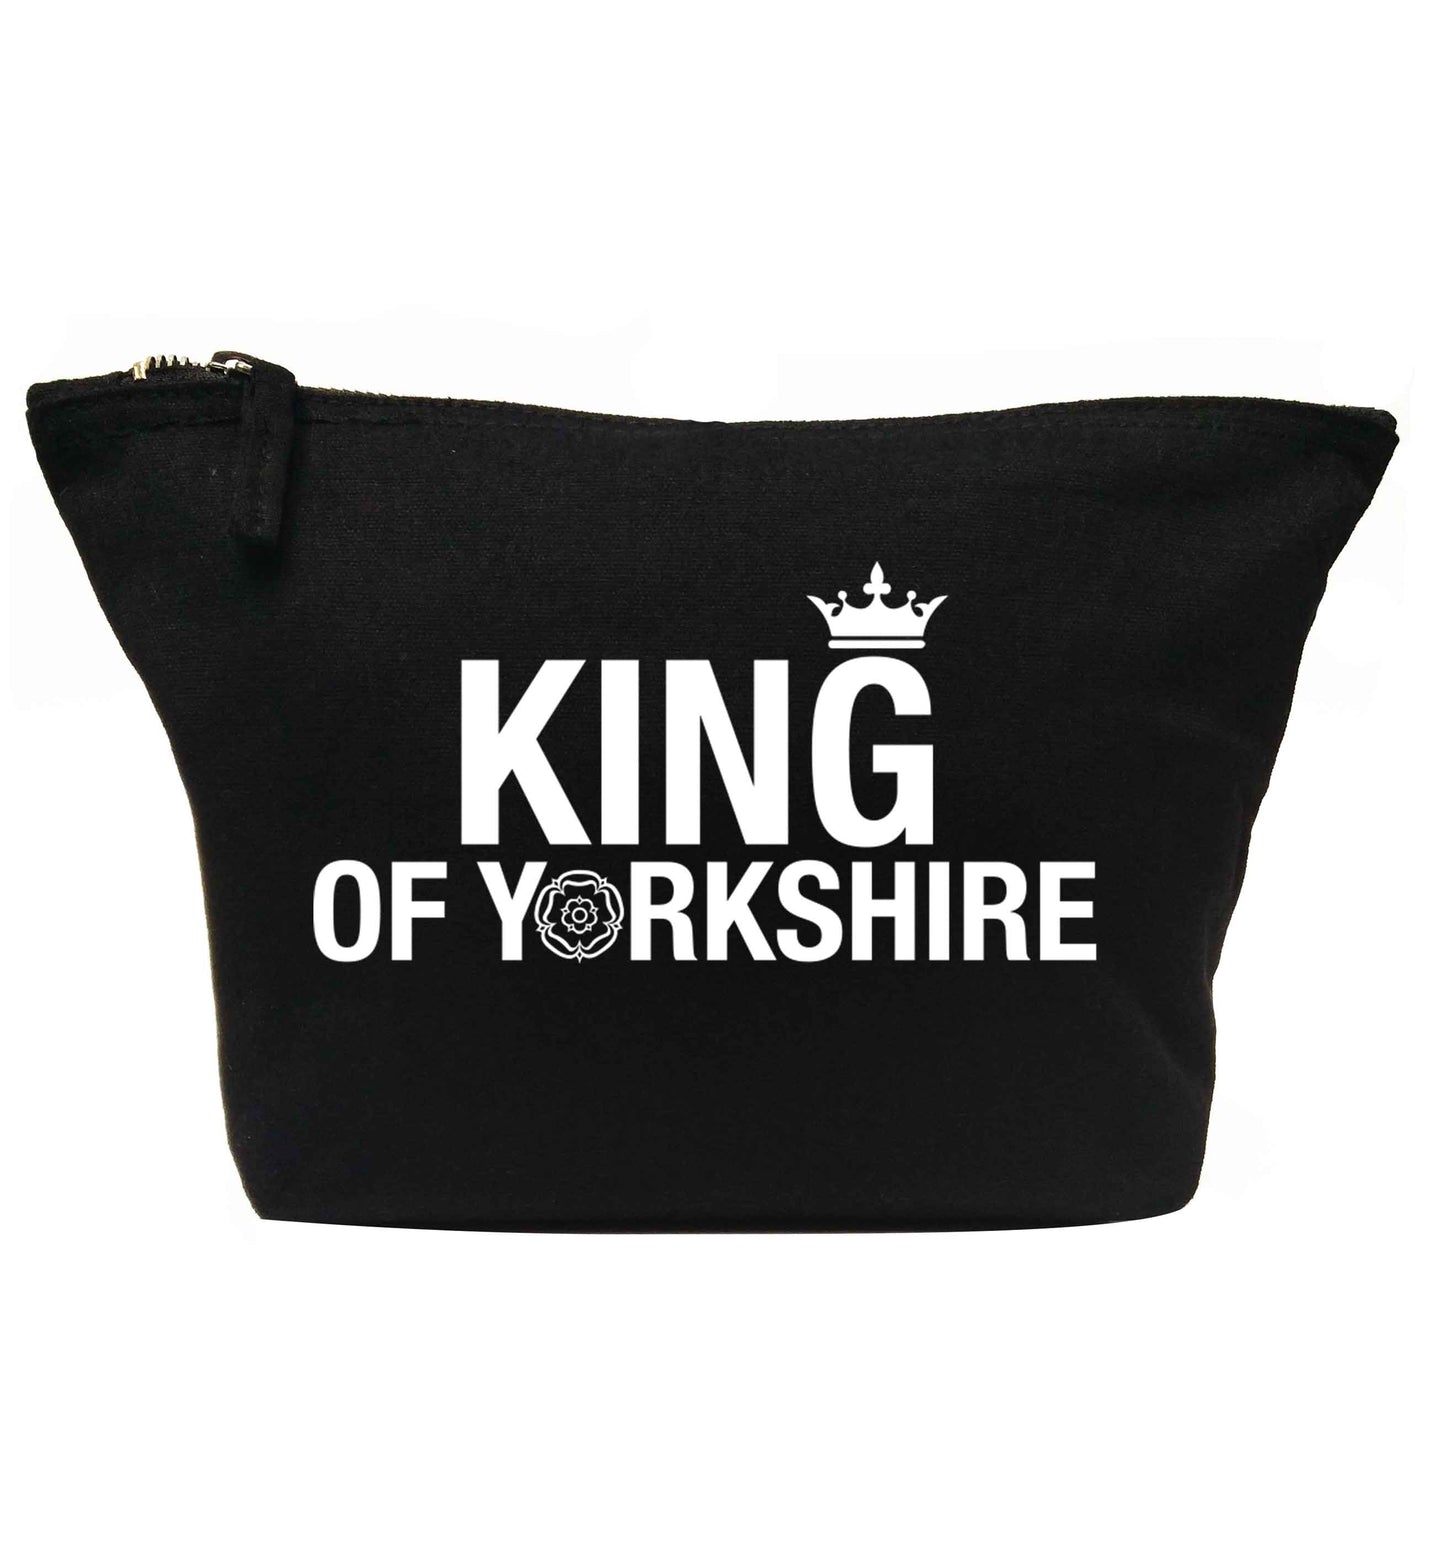 King of Yorkshire | makeup / wash bag